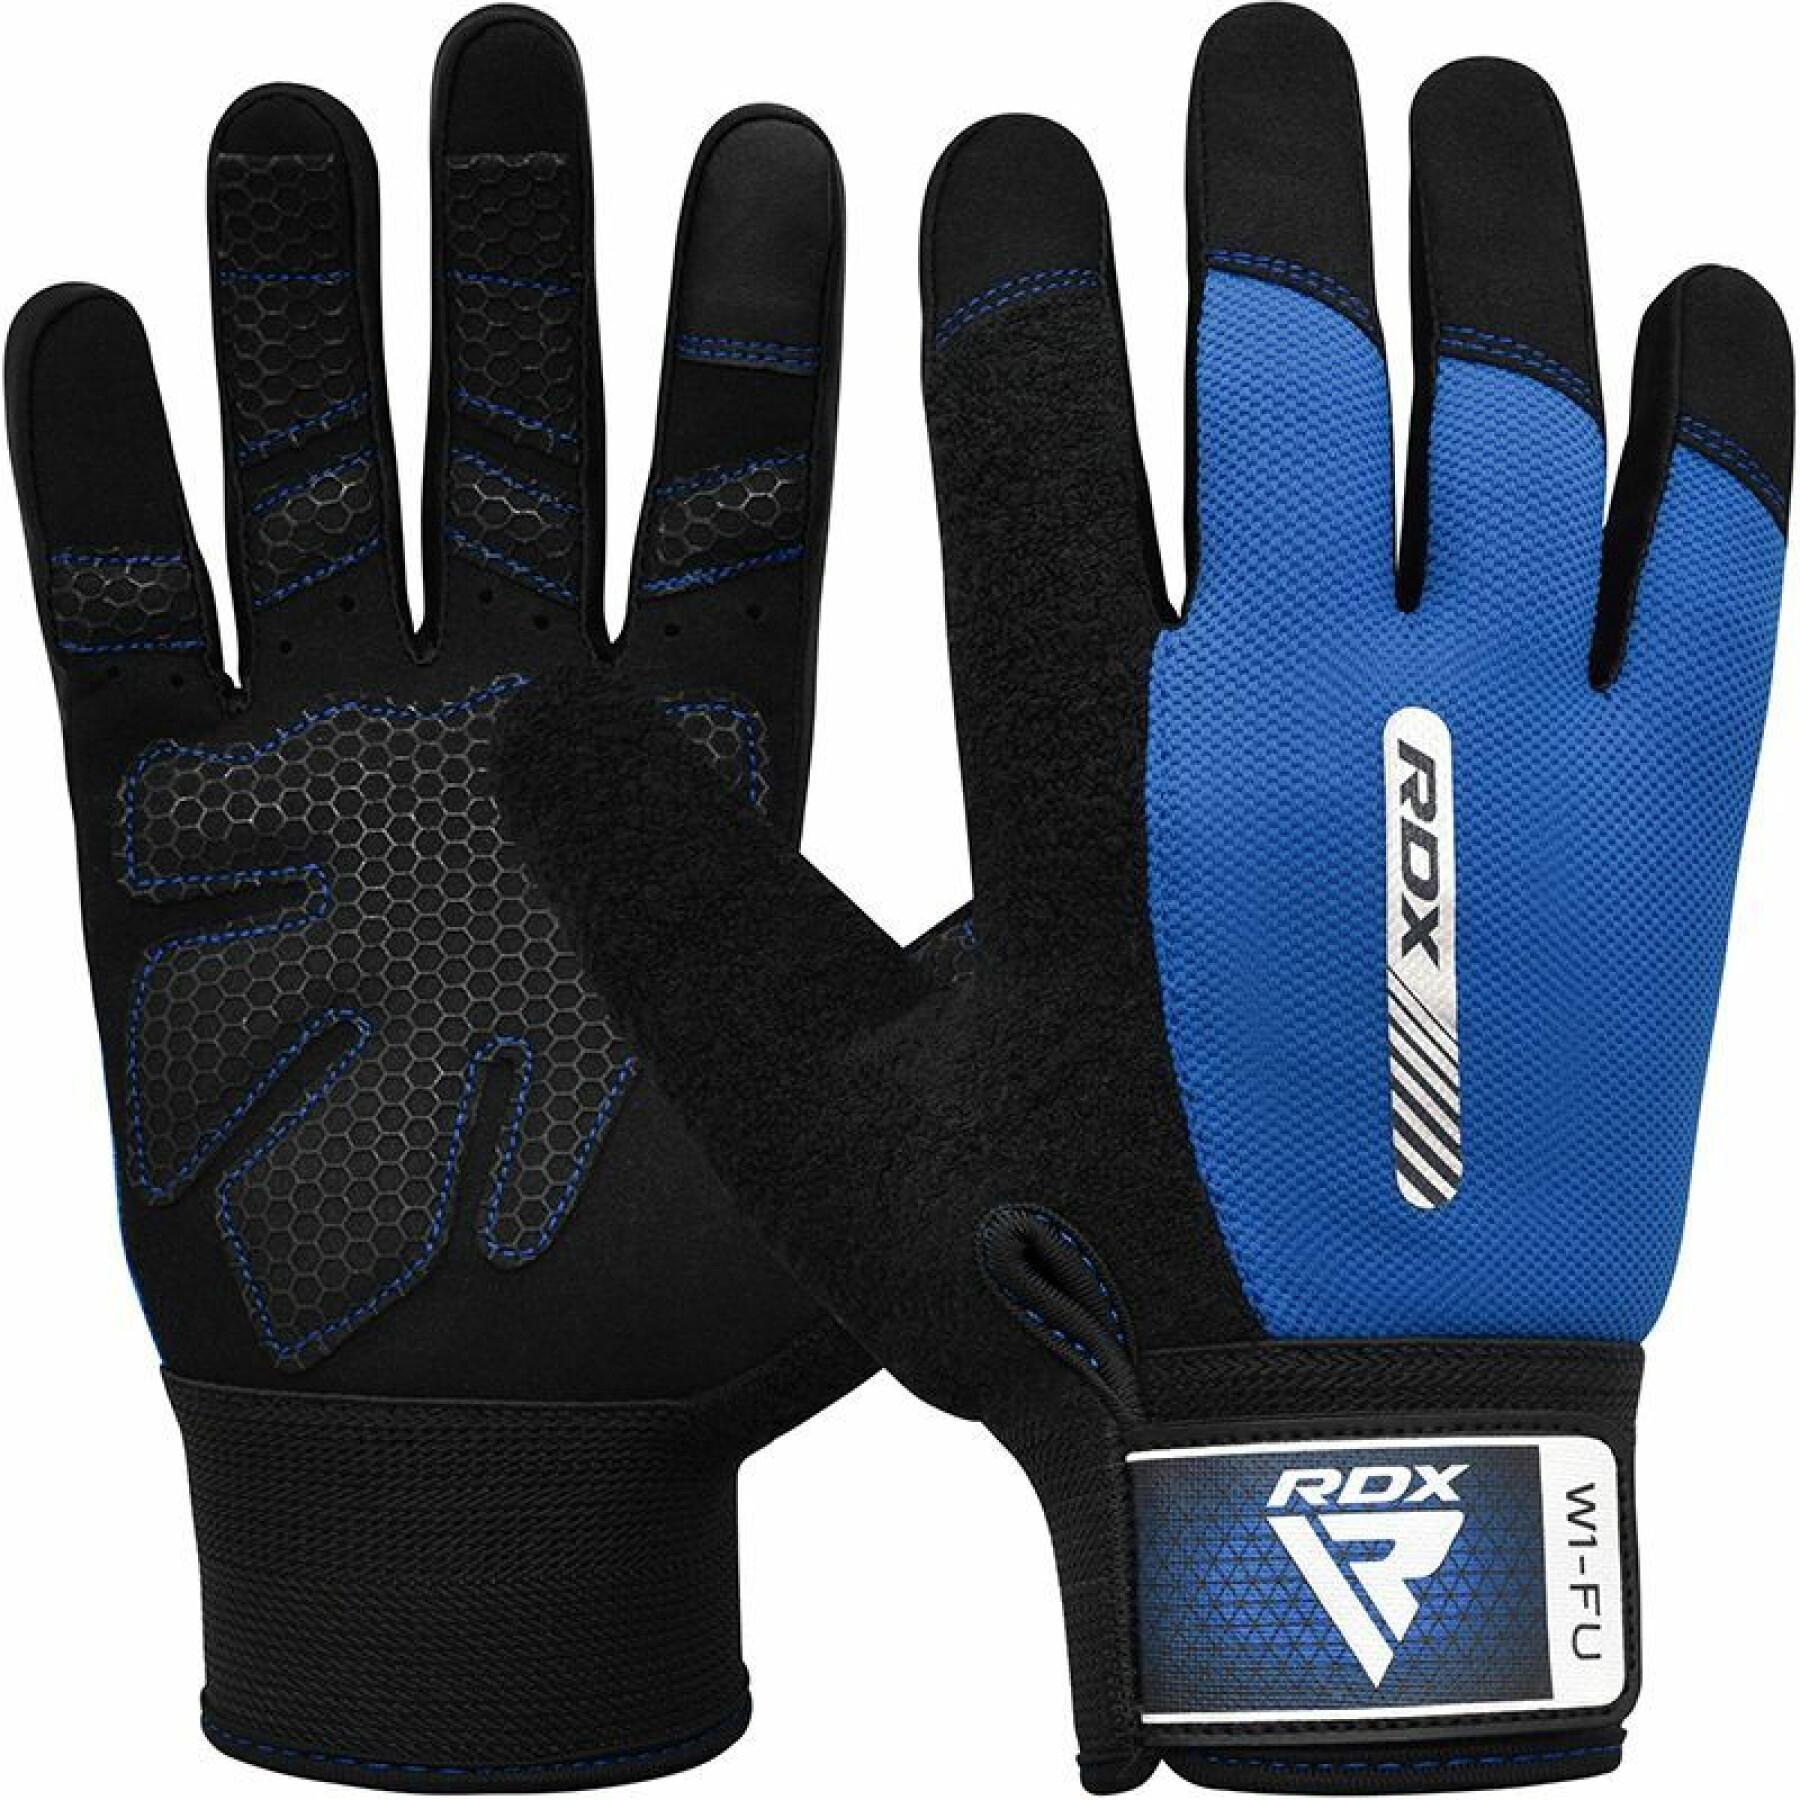 Training gloves RDX Full W1